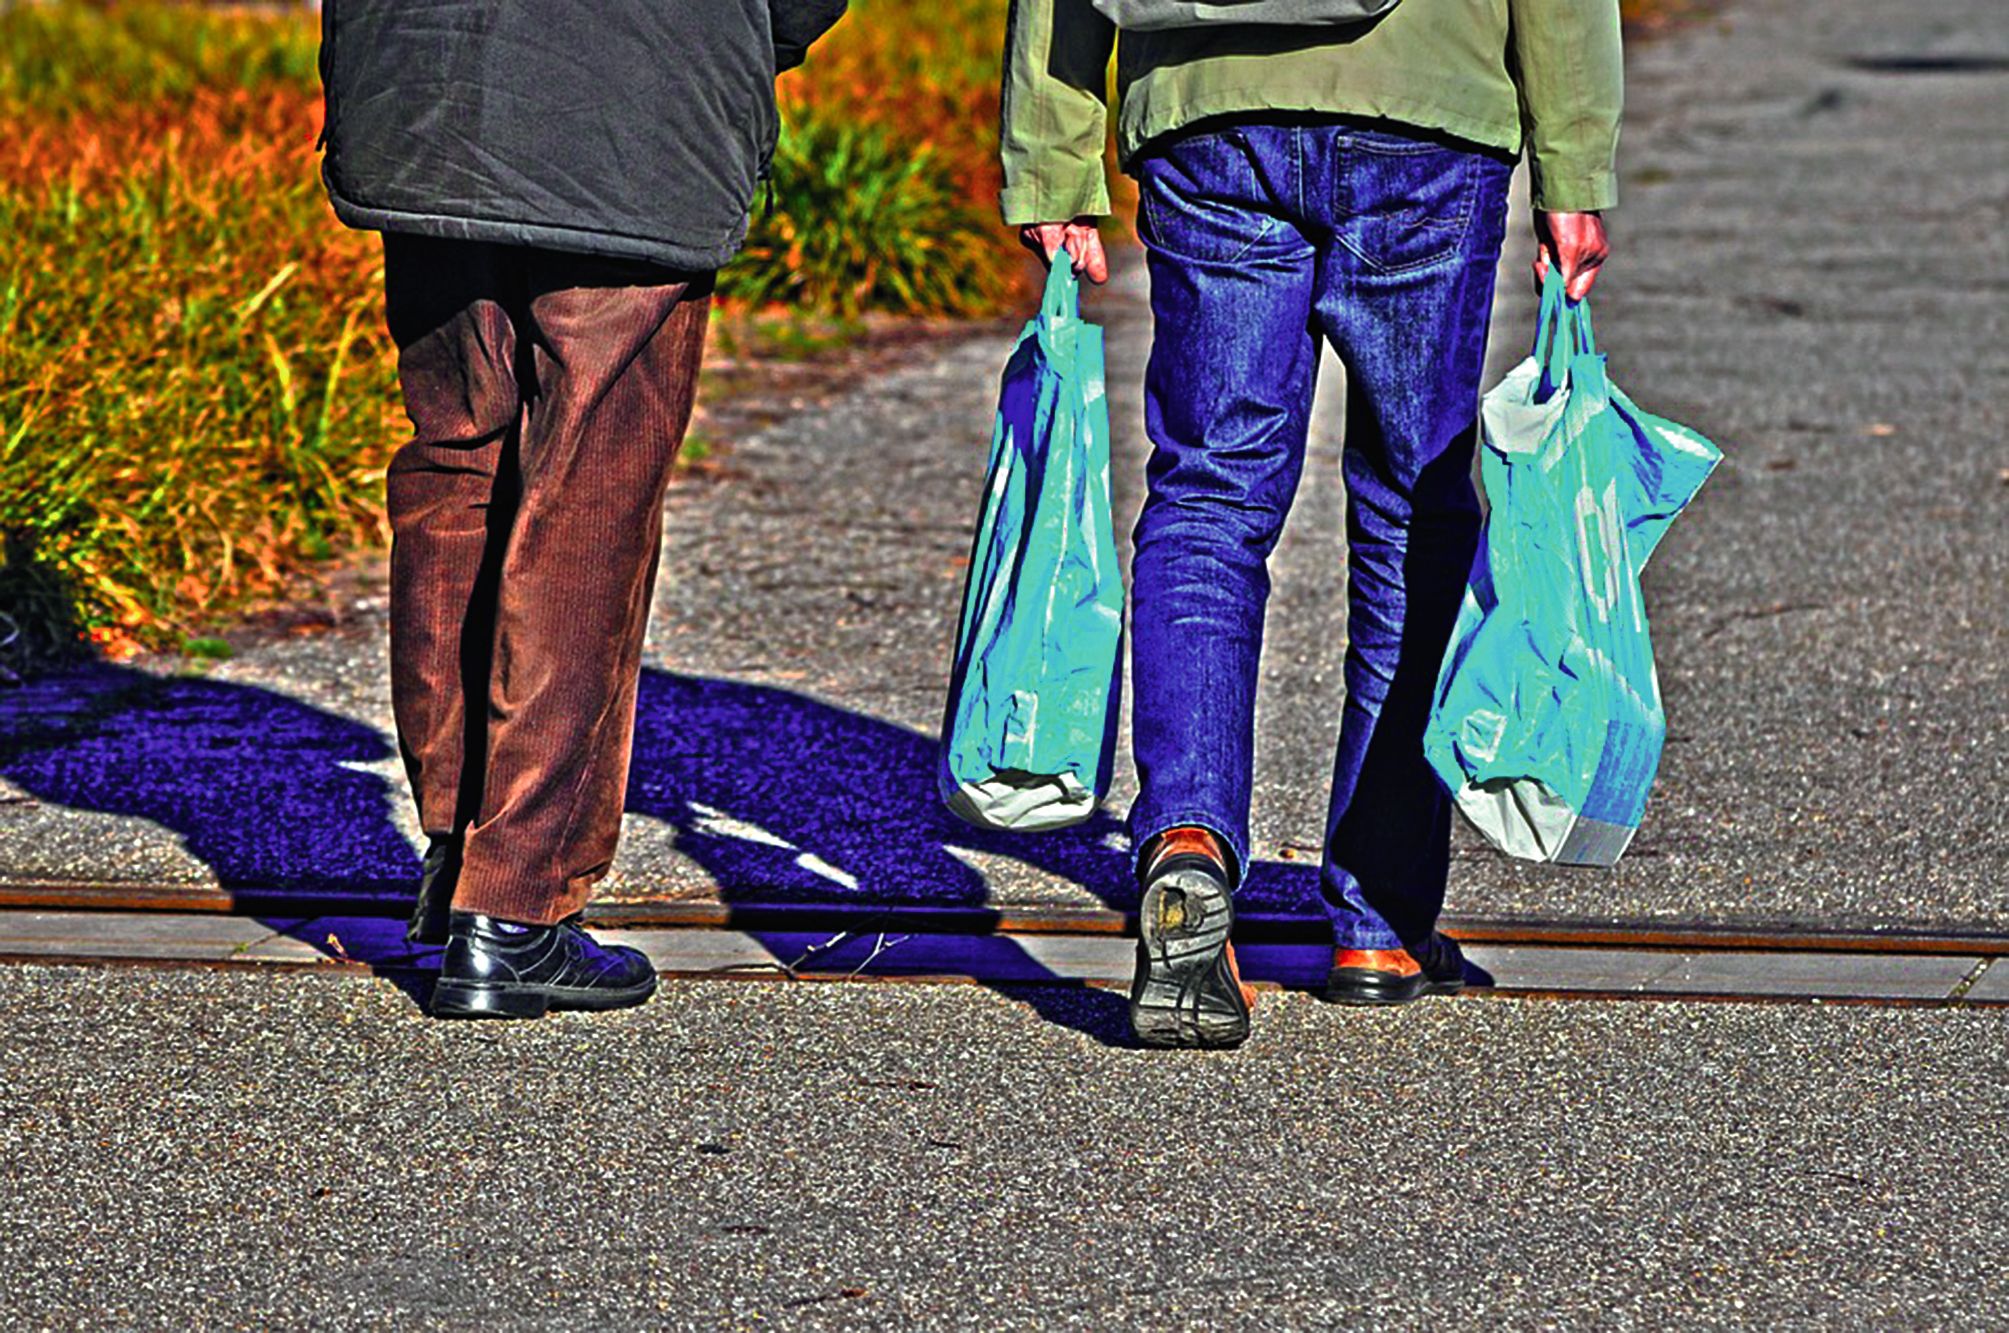 Les sacs en plastique épais, réutilisables, ou les sacs en tissu et les paniers en osier sont devenus la norme pour faire ses courses.Photo AFP